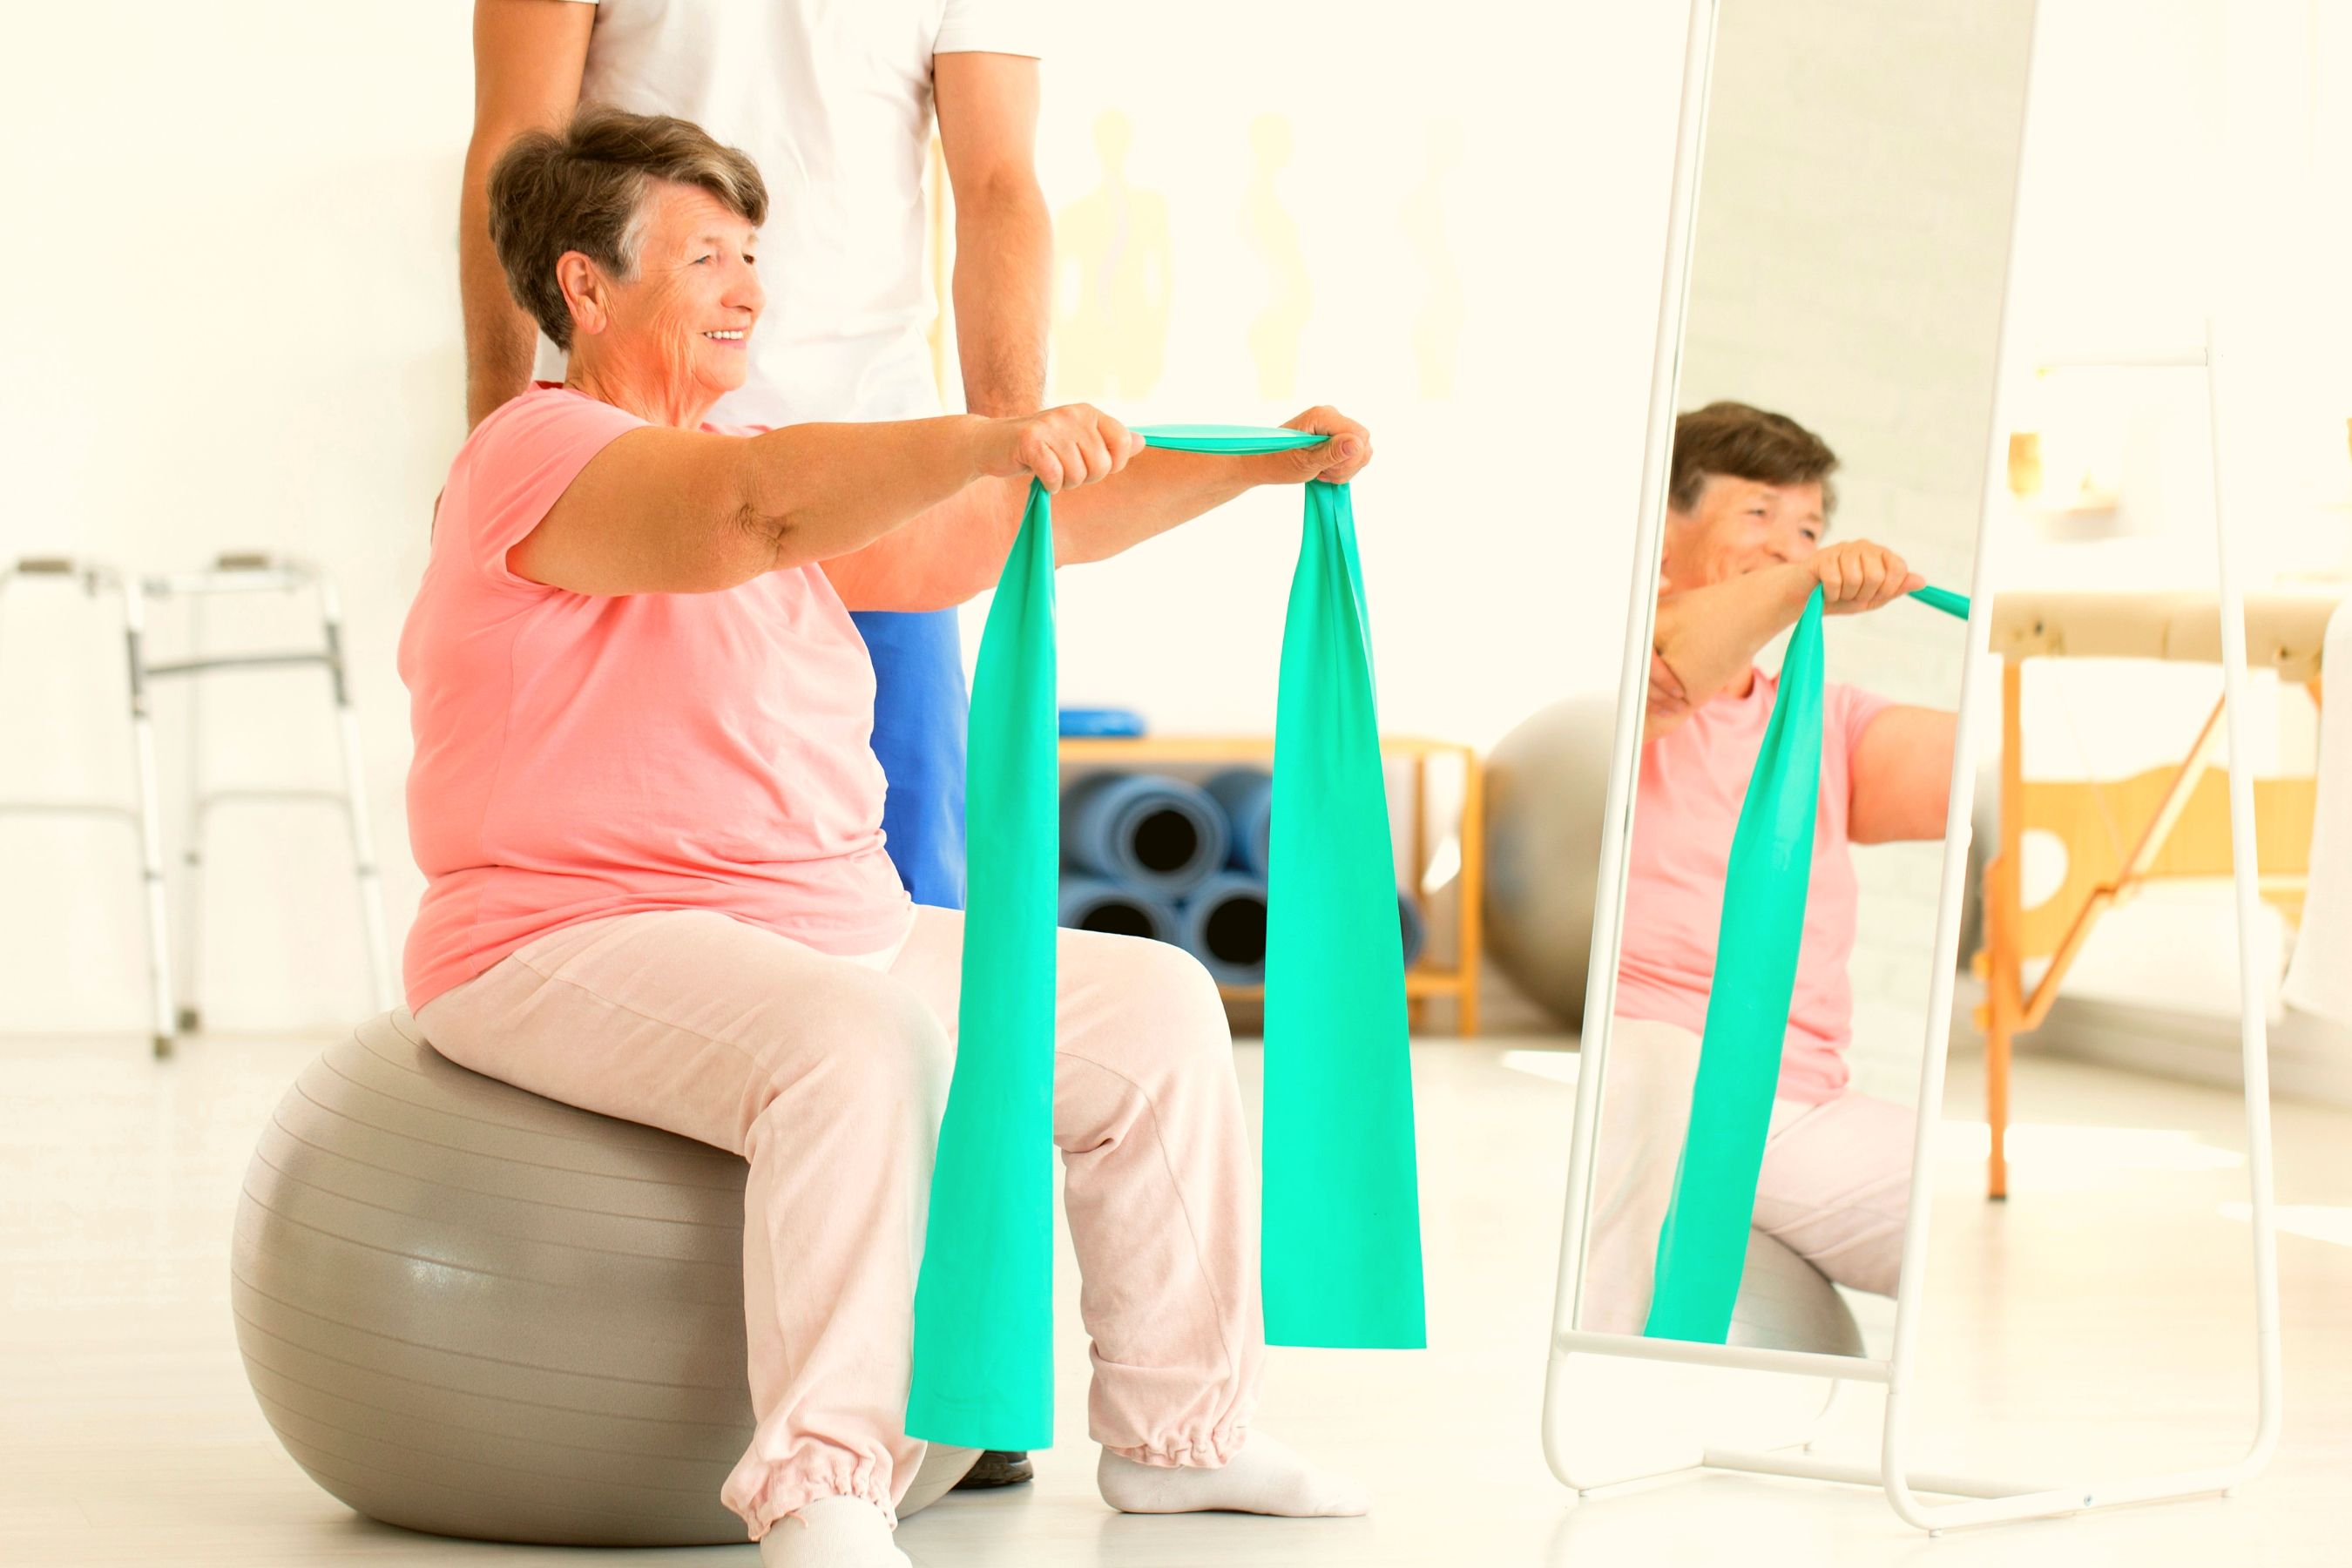 Exercício aumenta longevidade em idosos com problemas de saúde